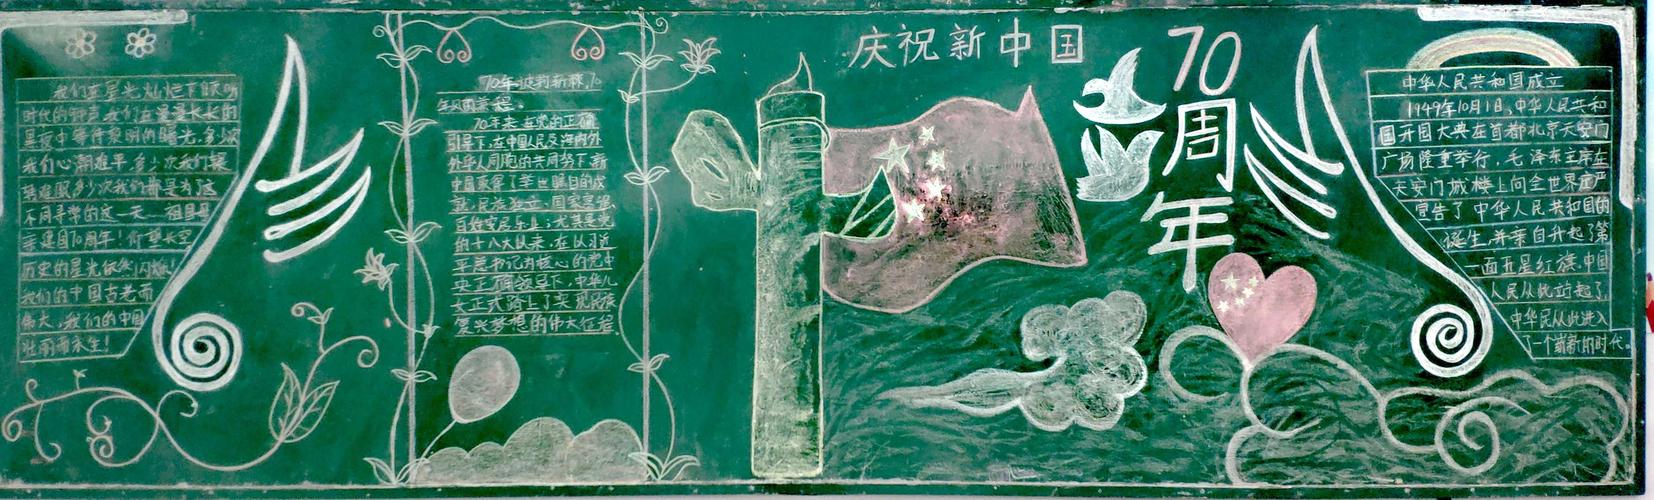 壮丽70年 奋斗新时代庆祝中华人民共和国70周年主题黑板报评比活动